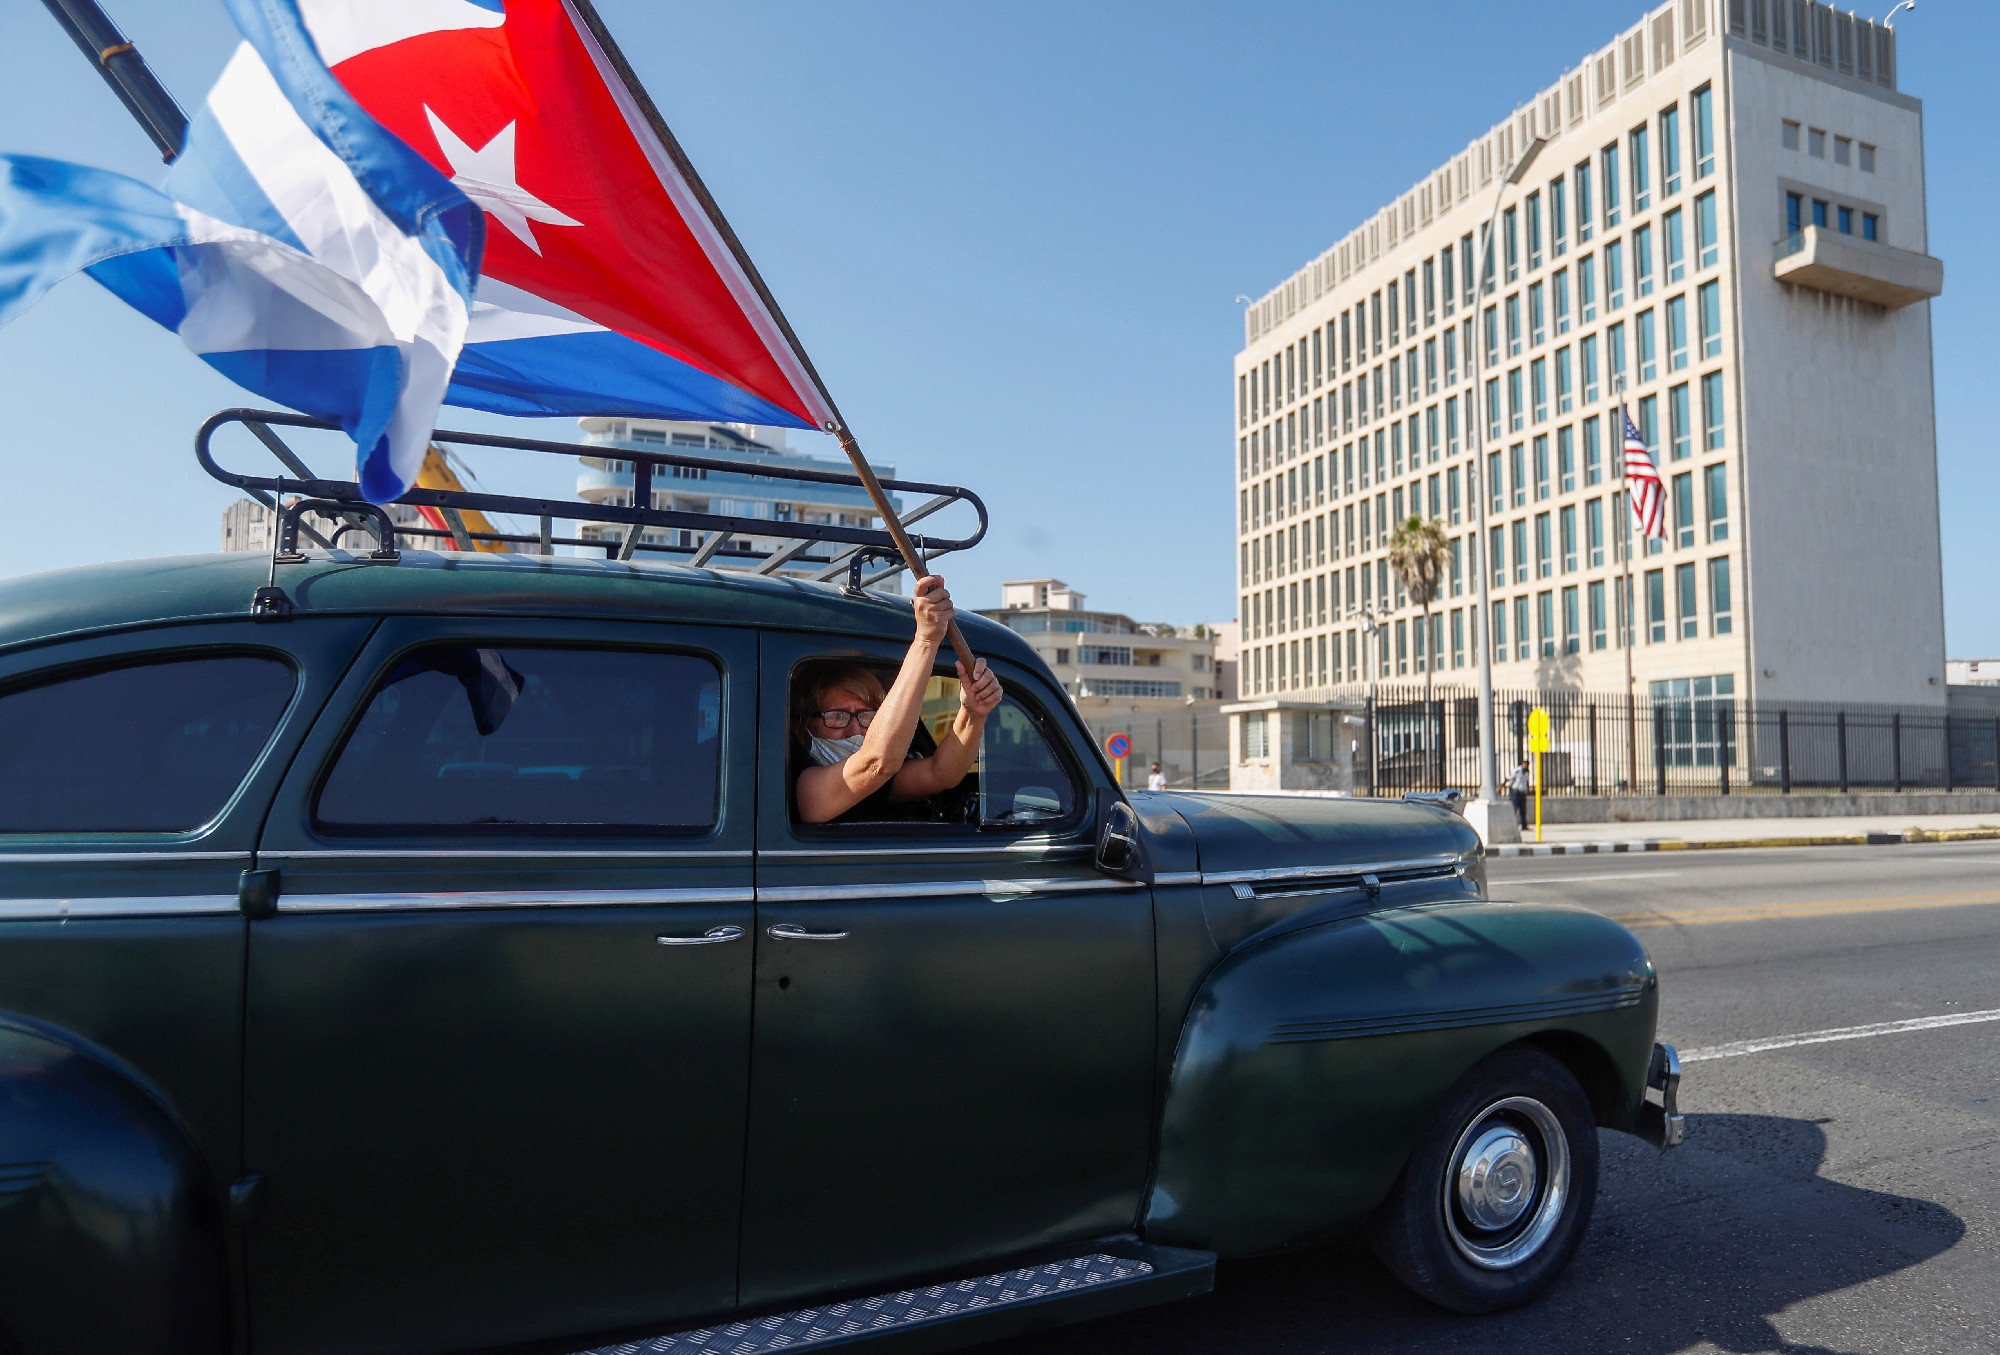 Oroszokhoz köti a Havanna-szindrómát egy nemzetközi oknyomozó anyag